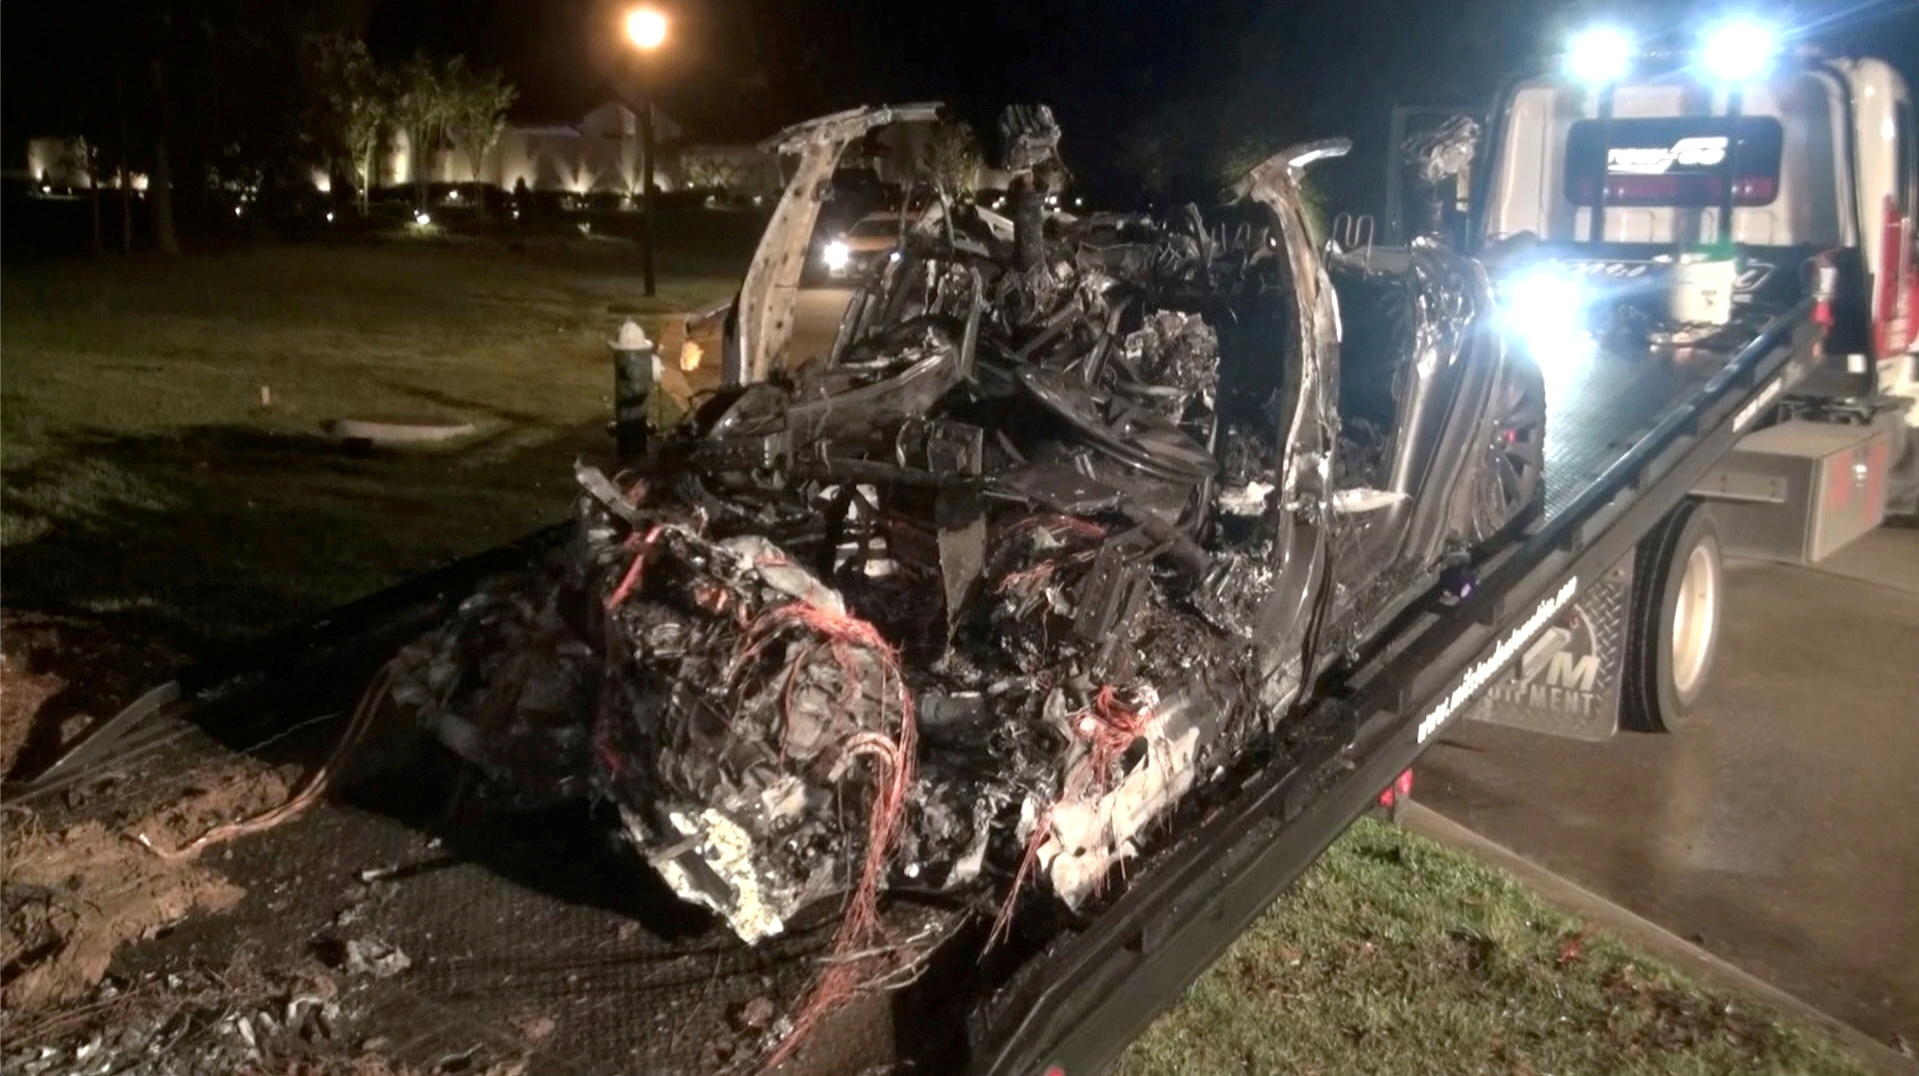 The Woodlands (Texas, Etats-Unis), le 17 avril. La voiture accidentée est enlevée. Reuters/Scott J. Engle